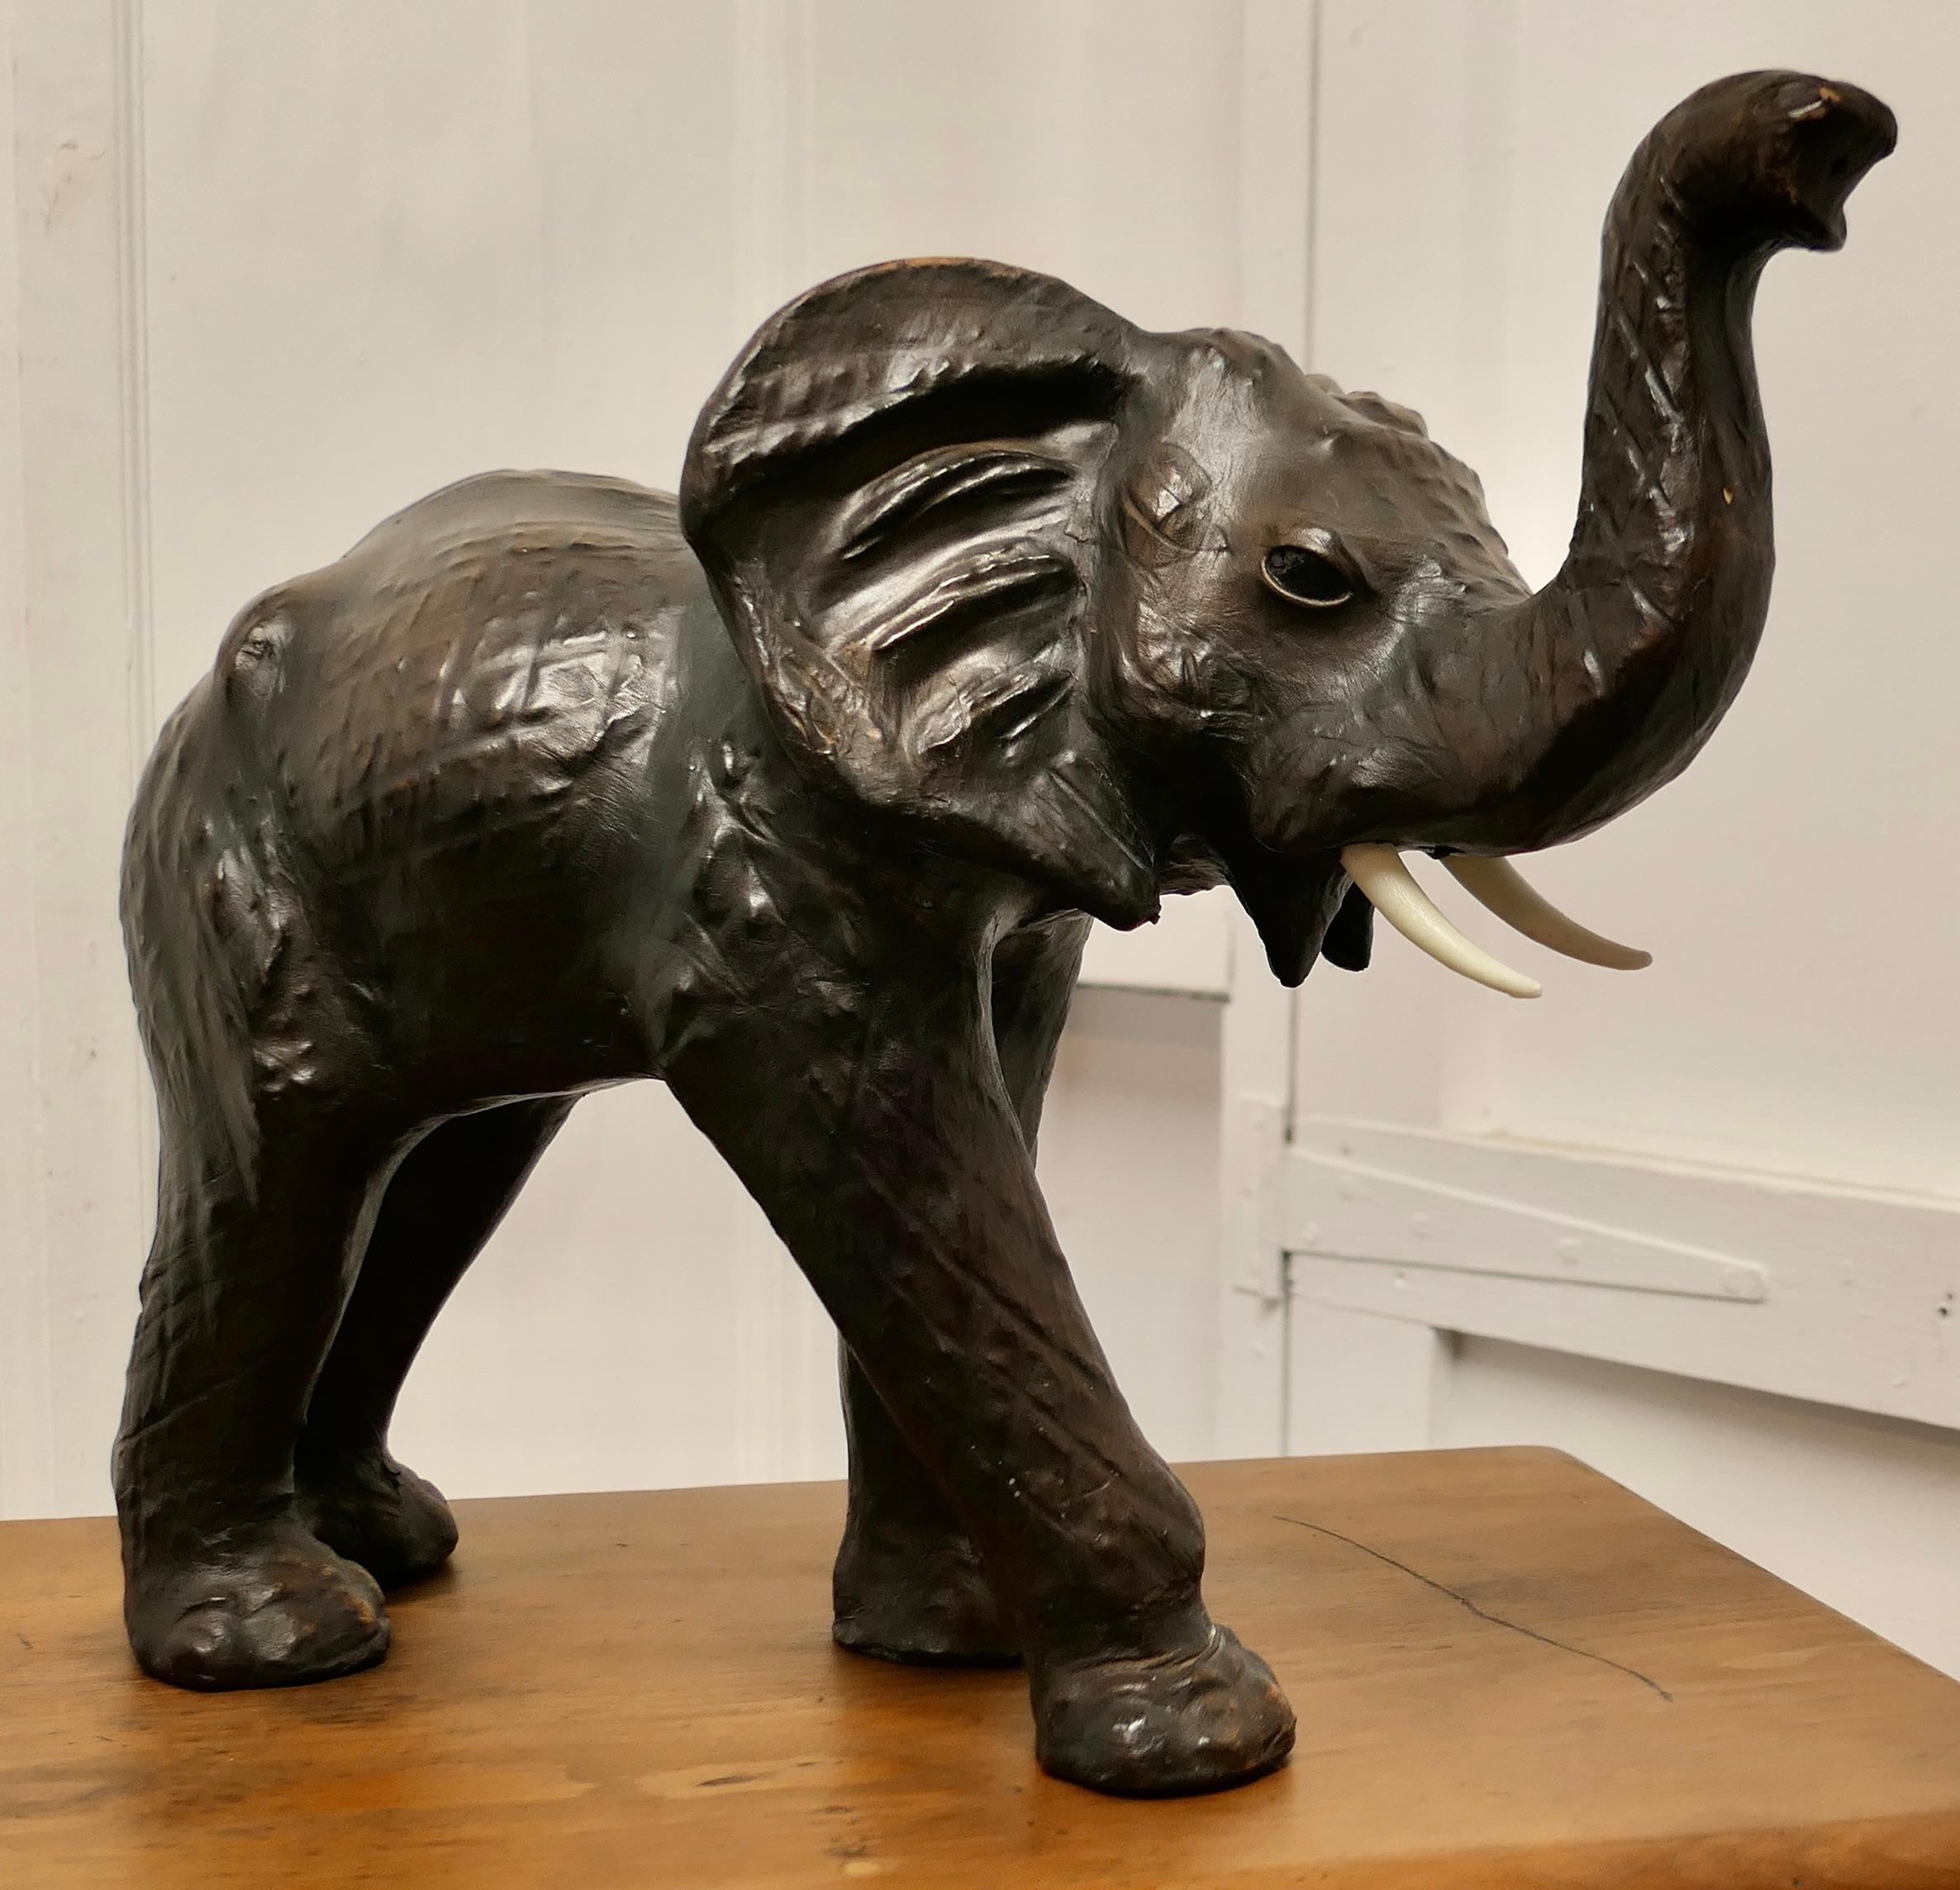  Kunsthandwerkliches Ledermodell eines Elefanten aus Leder 

Dies ist ein seltener und schöner Fund aus der ersten Hälfte des 20. Jahrhunderts, er wurde für Liberty hergestellt und ist als 